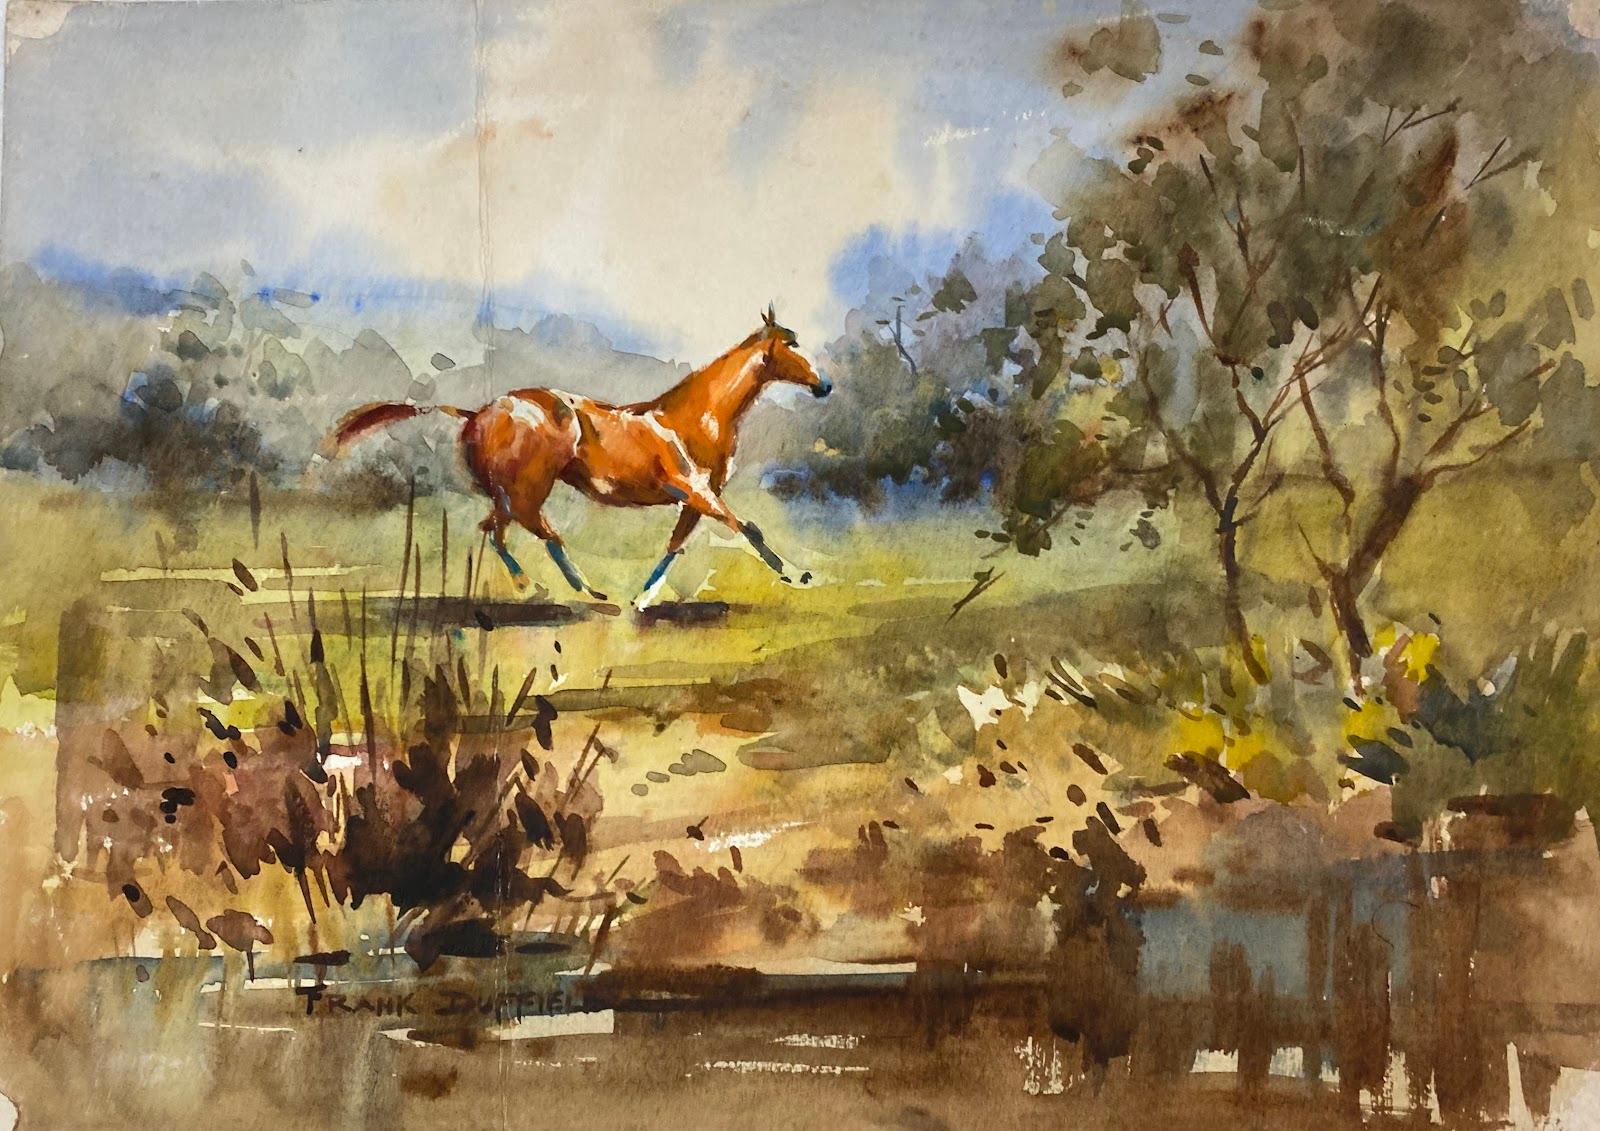 Abstract Drawing Frank Duffield - Peinture impressionniste britannique représentant un cheval piqué sur un terrain par Stream 